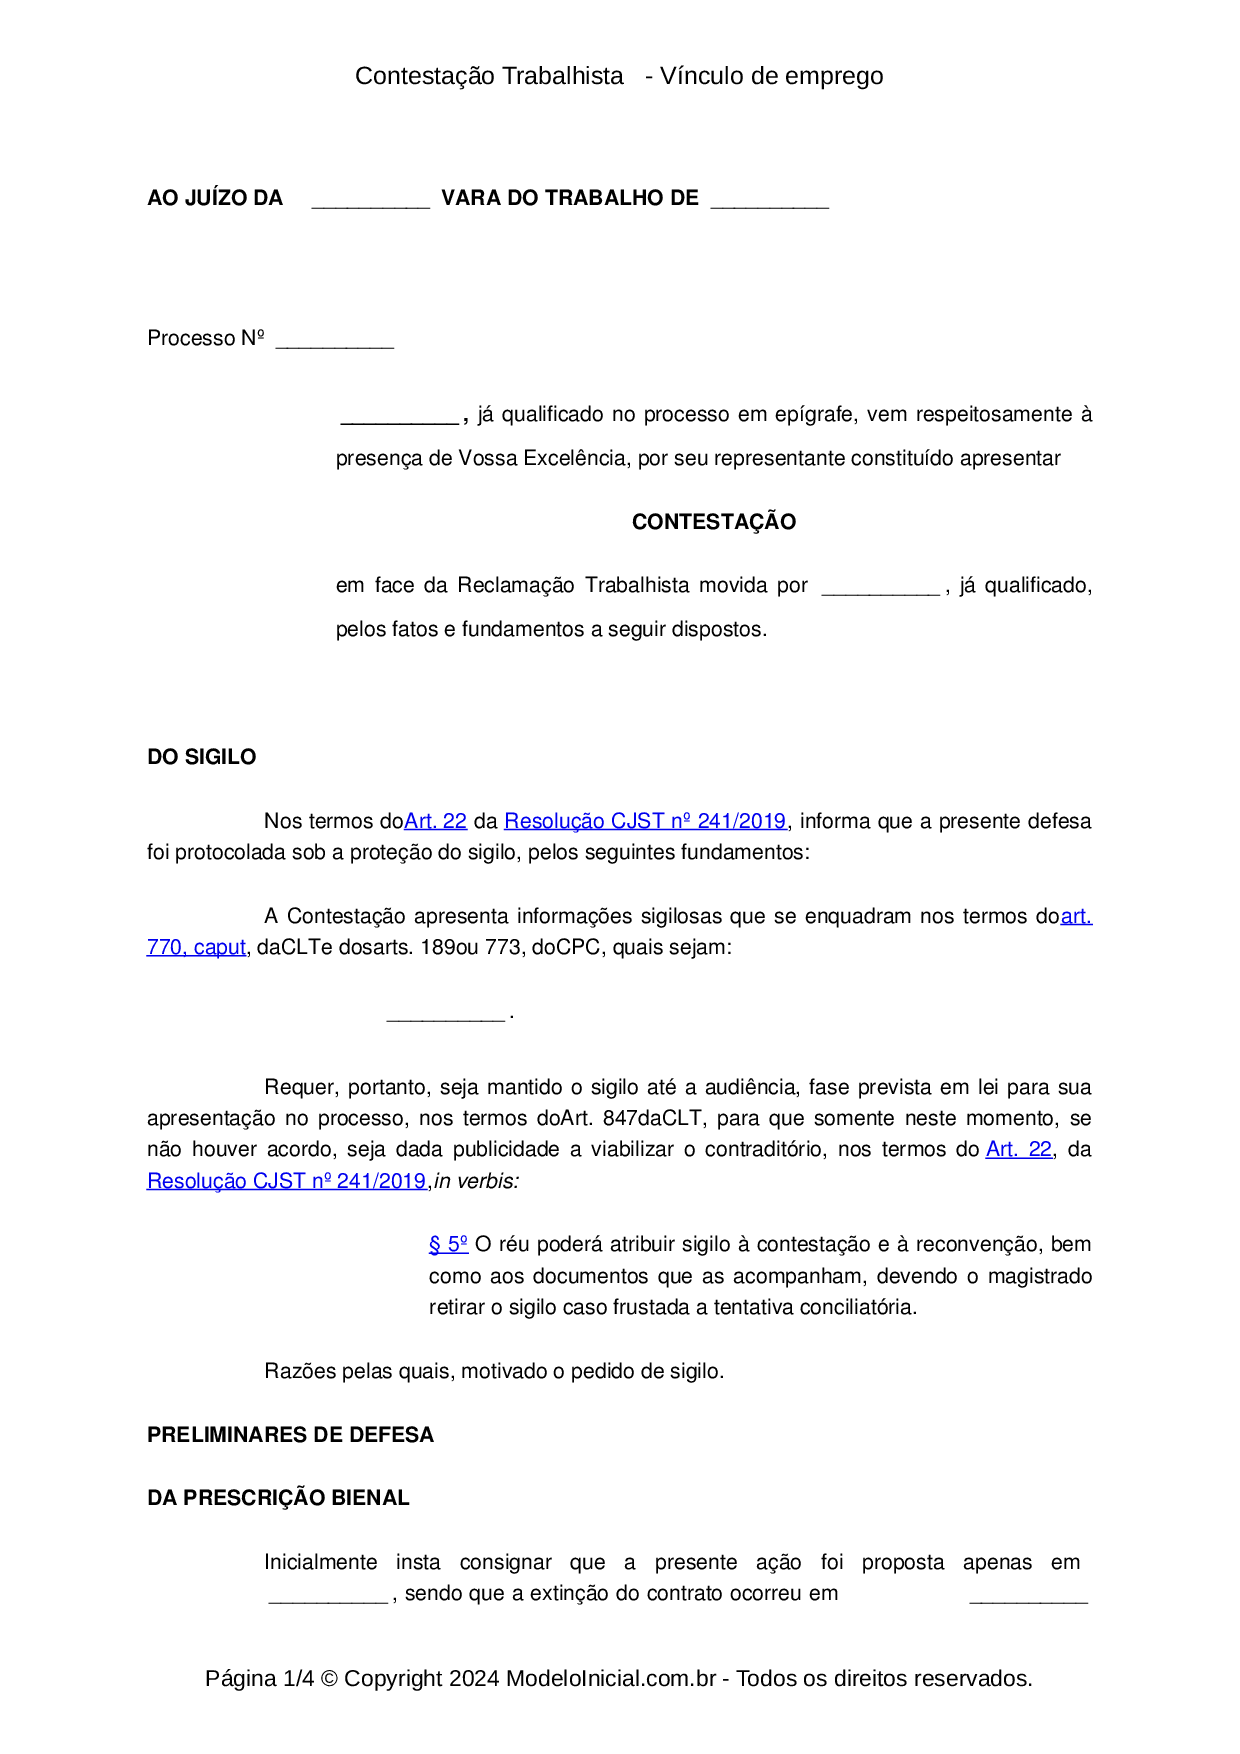 PROPOSTA DE TRABALHO DIGITADOR ONLINE - Baixar pdf de